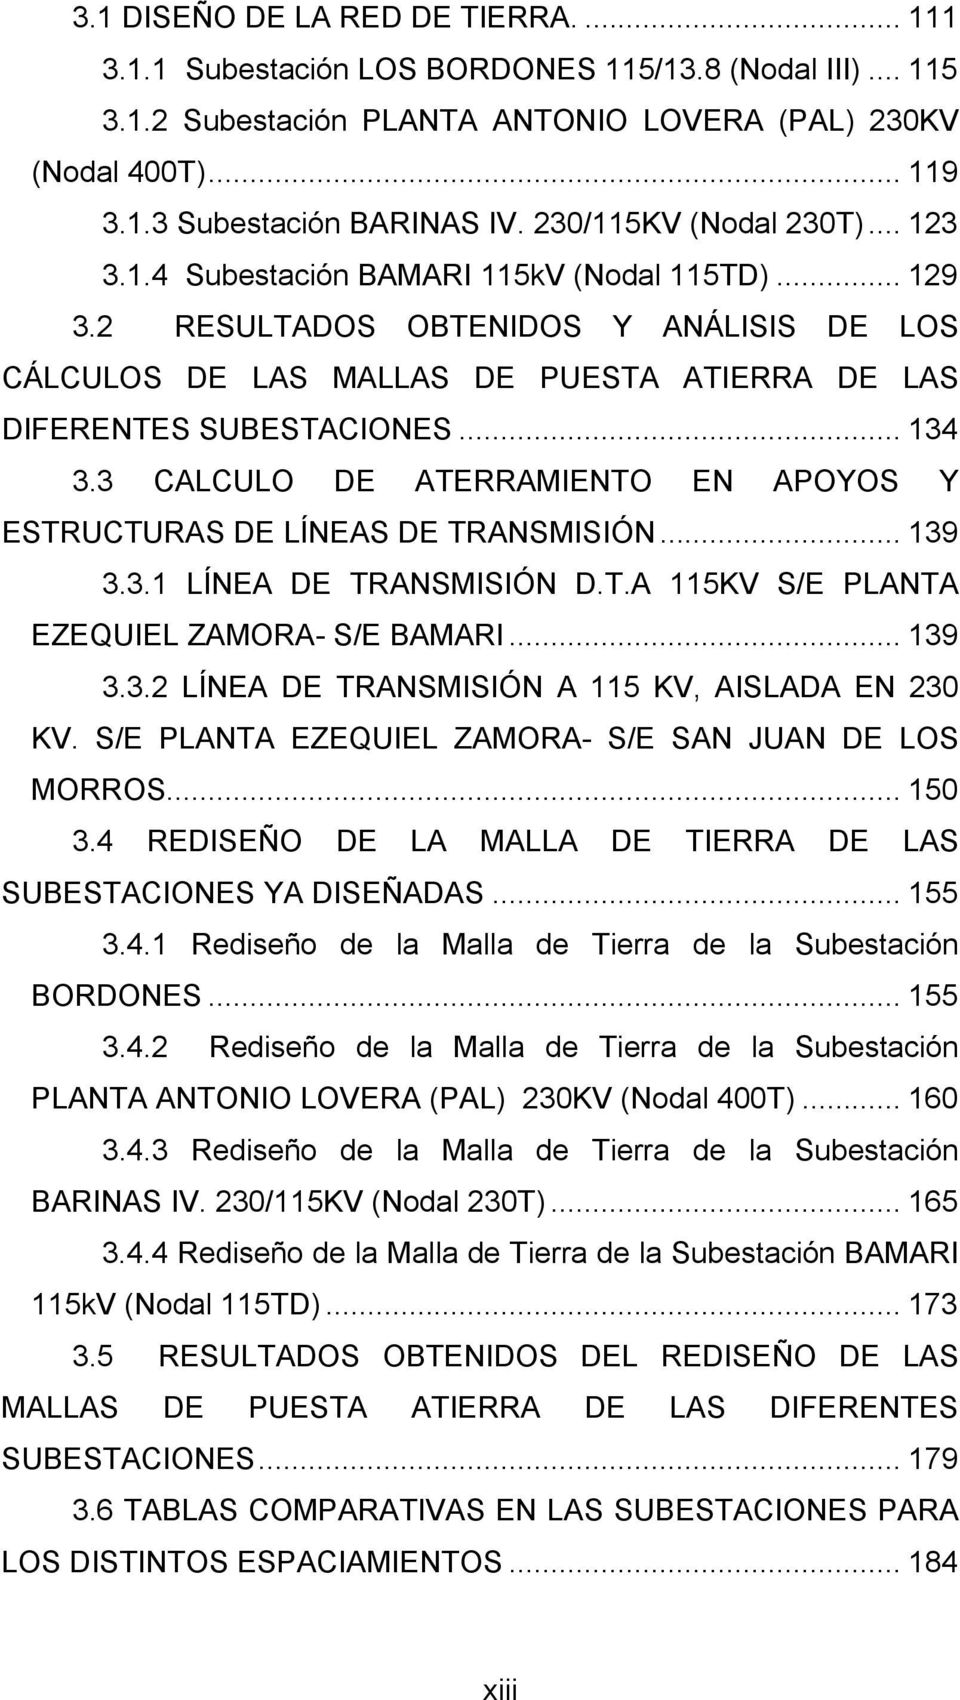 .. 134 3.3 CALCULO DE ATERRAMIENTO EN APOYOS Y ESTRUCTURAS DE LÍNEAS DE TRANSMISIÓN... 139 3.3.1 LÍNEA DE TRANSMISIÓN D.T.A 115KV S/E PLANTA EZEQUIEL ZAMORA- S/E BAMARI... 139 3.3.2 LÍNEA DE TRANSMISIÓN A 115 KV, AISLADA EN 230 KV.